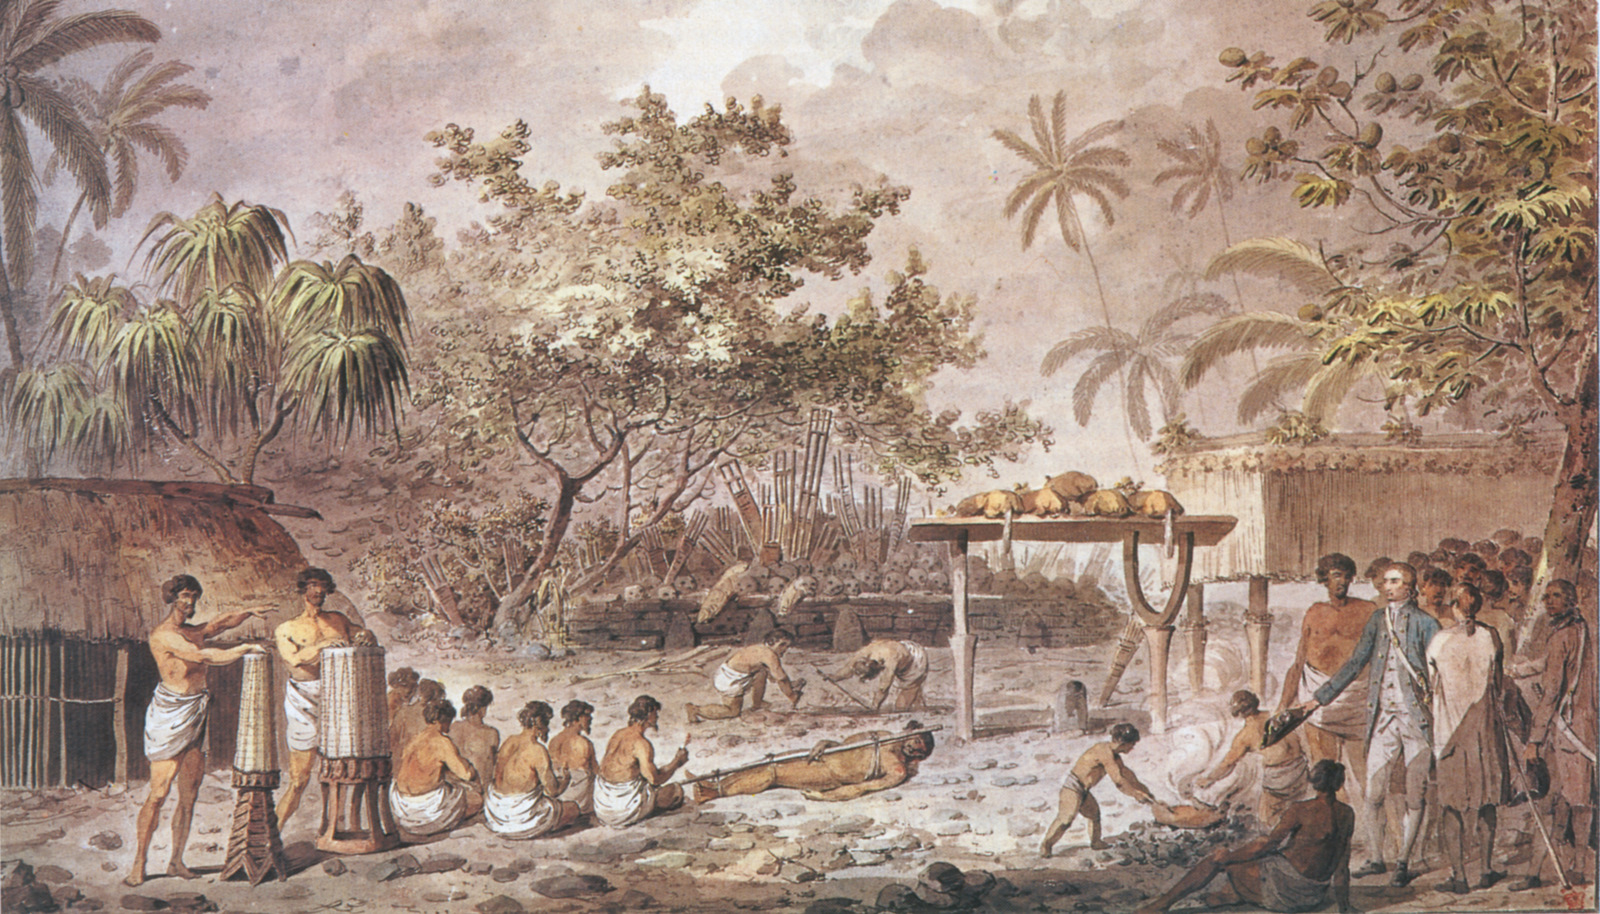 Le capitaine James Cook assiste à un sacrifice humain sur un "marre" (temple) tahitien ©DR